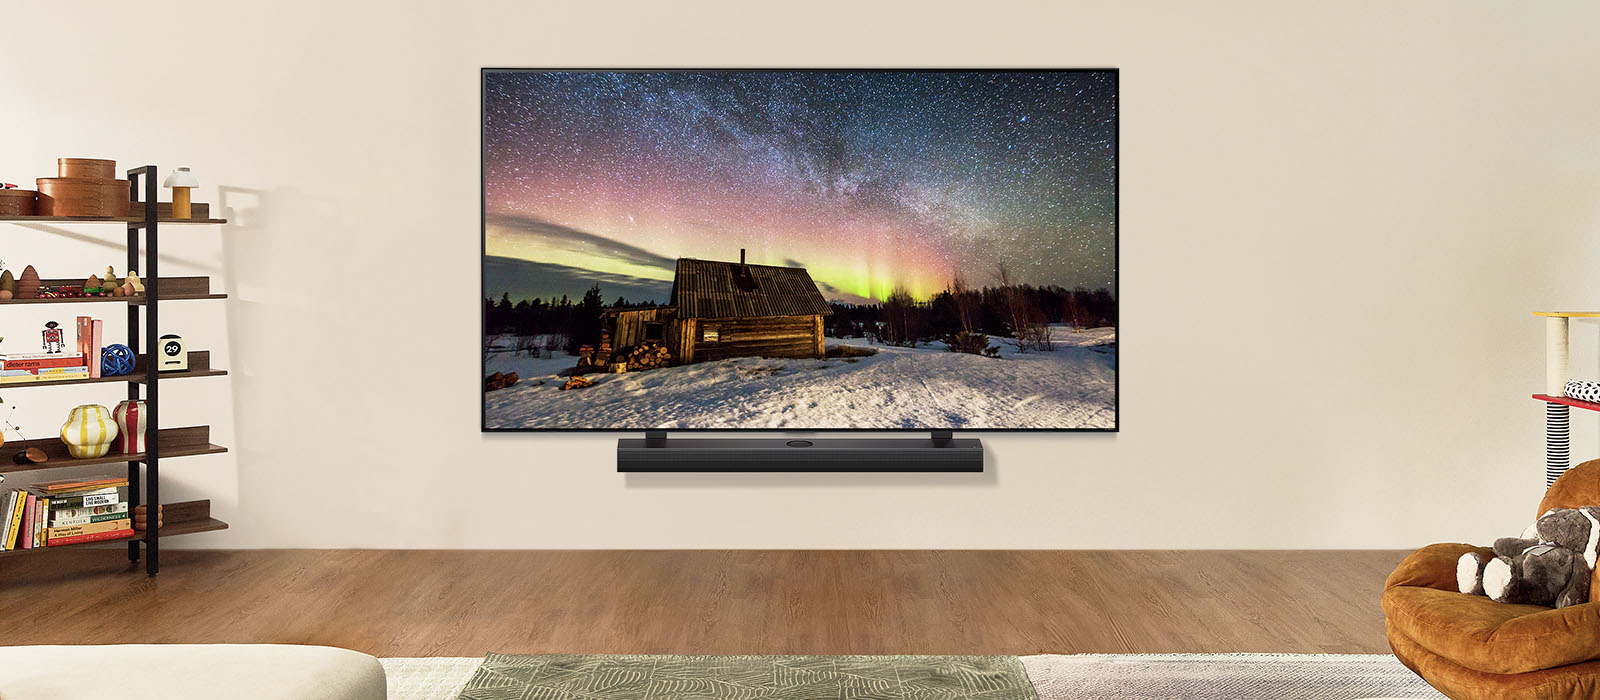 LG TV en LG Soundbar in een moderne woonruimte overdag. Een schermafbeelding van aurora borealis wordt weergegeven met het ideale helderheidsniveau.